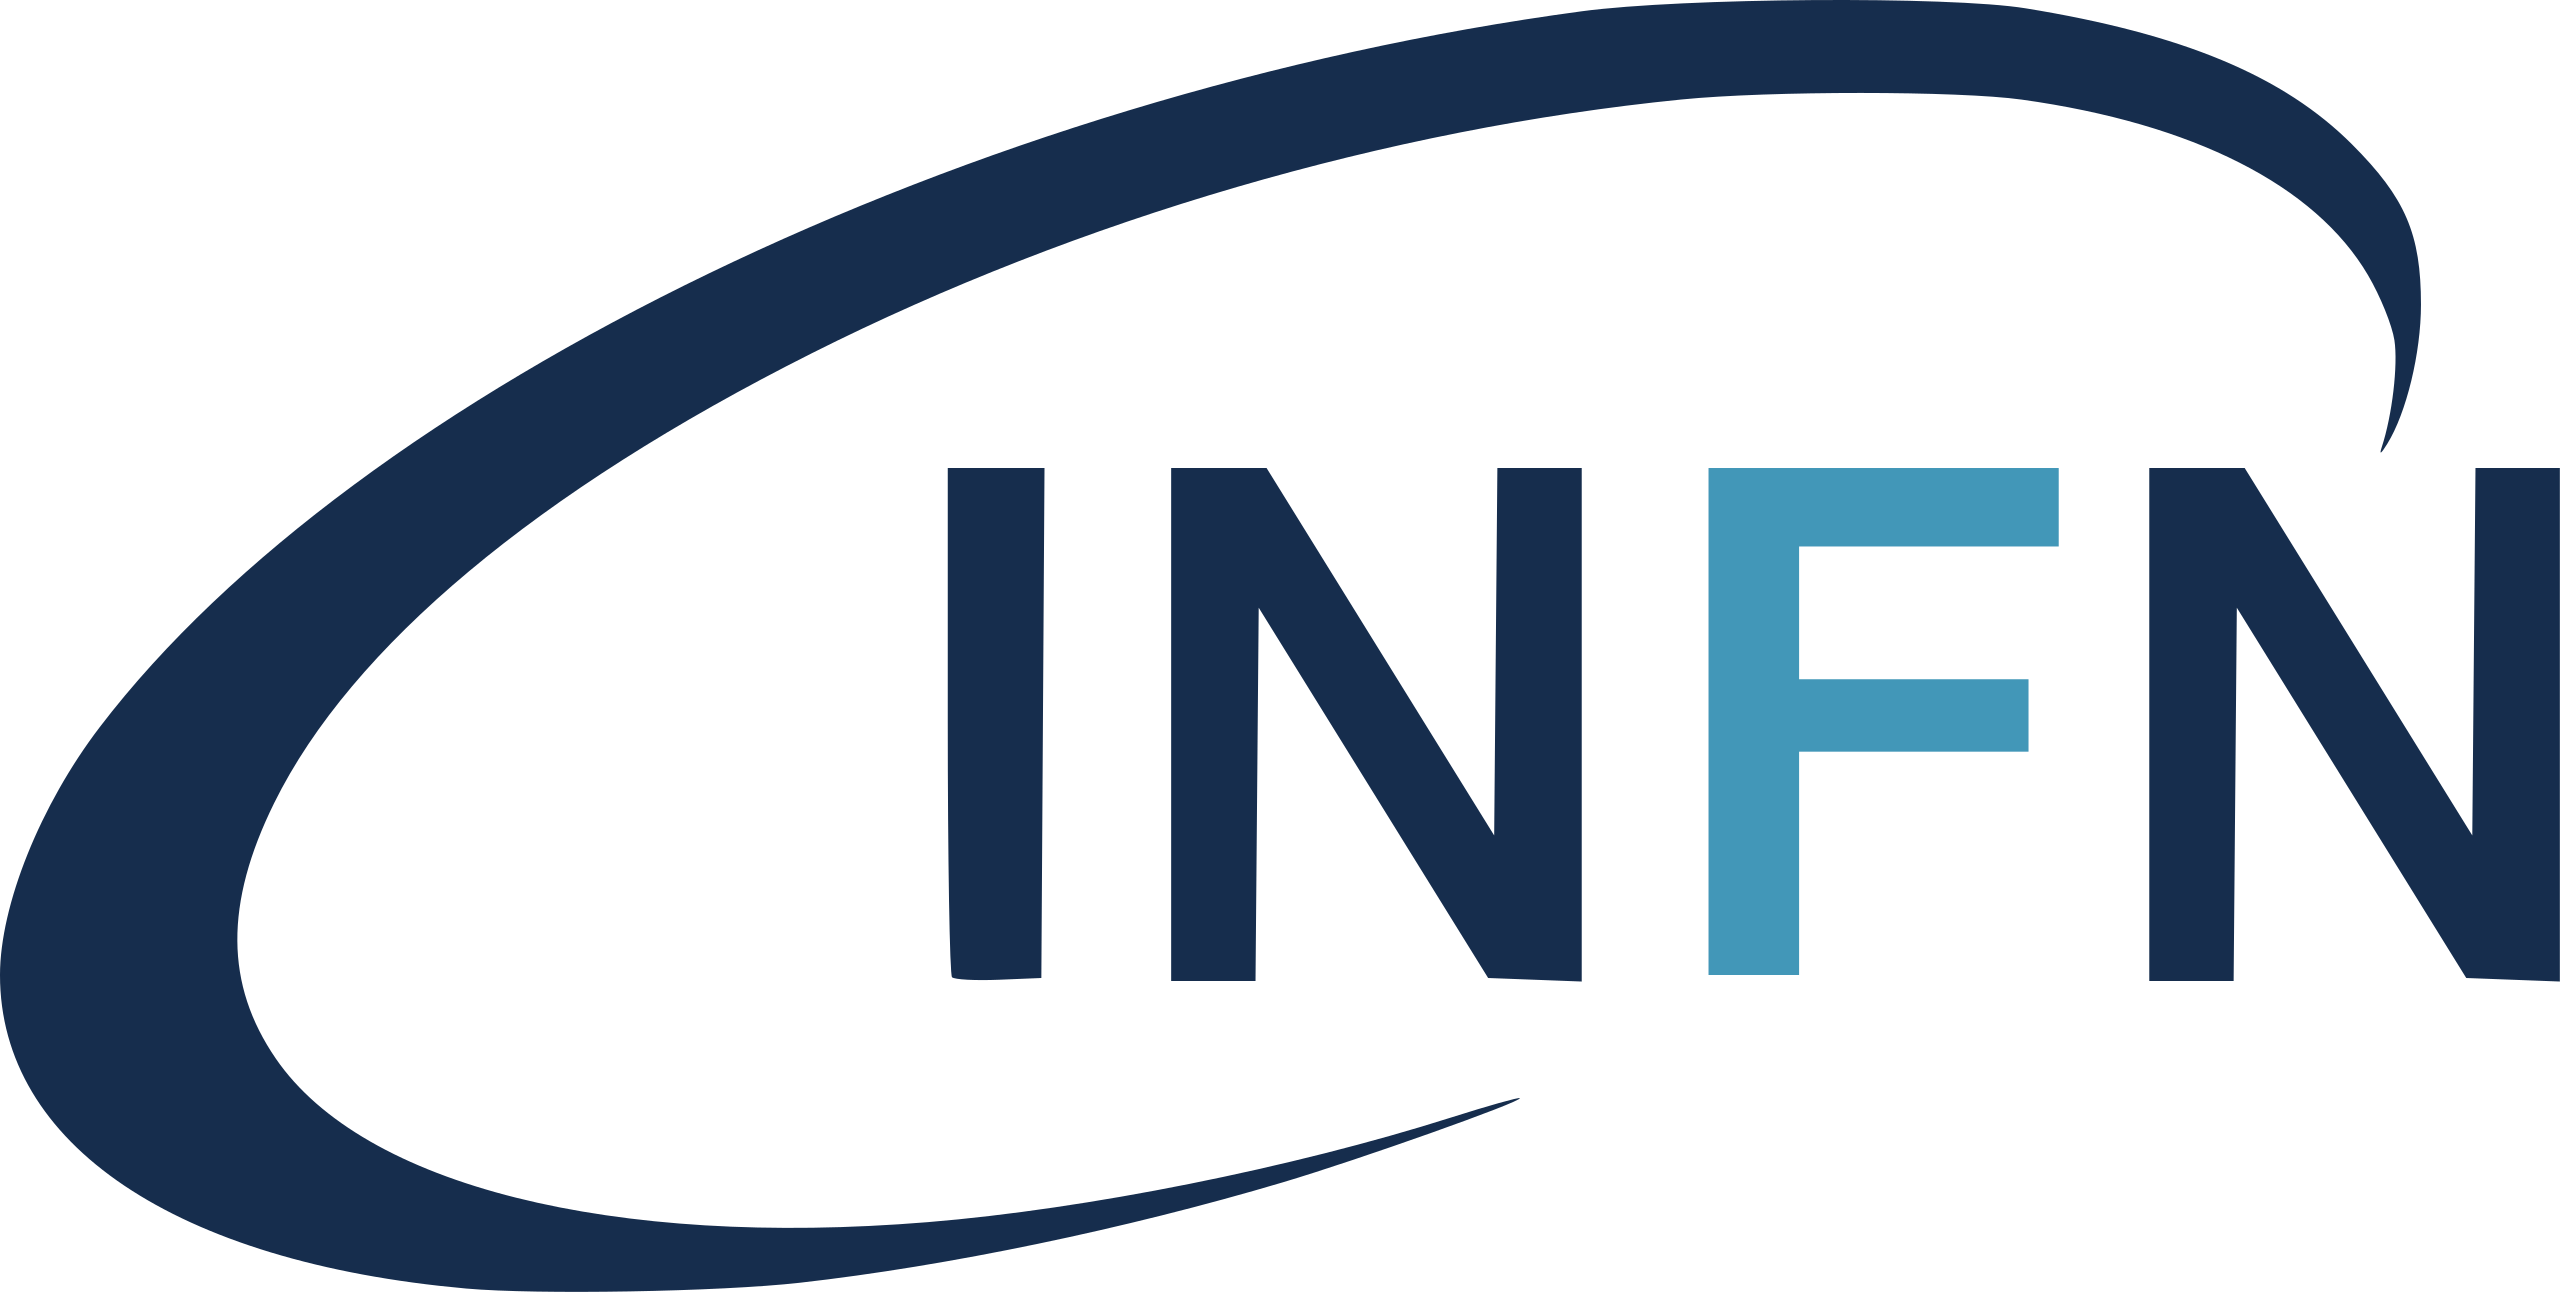 infn-logo